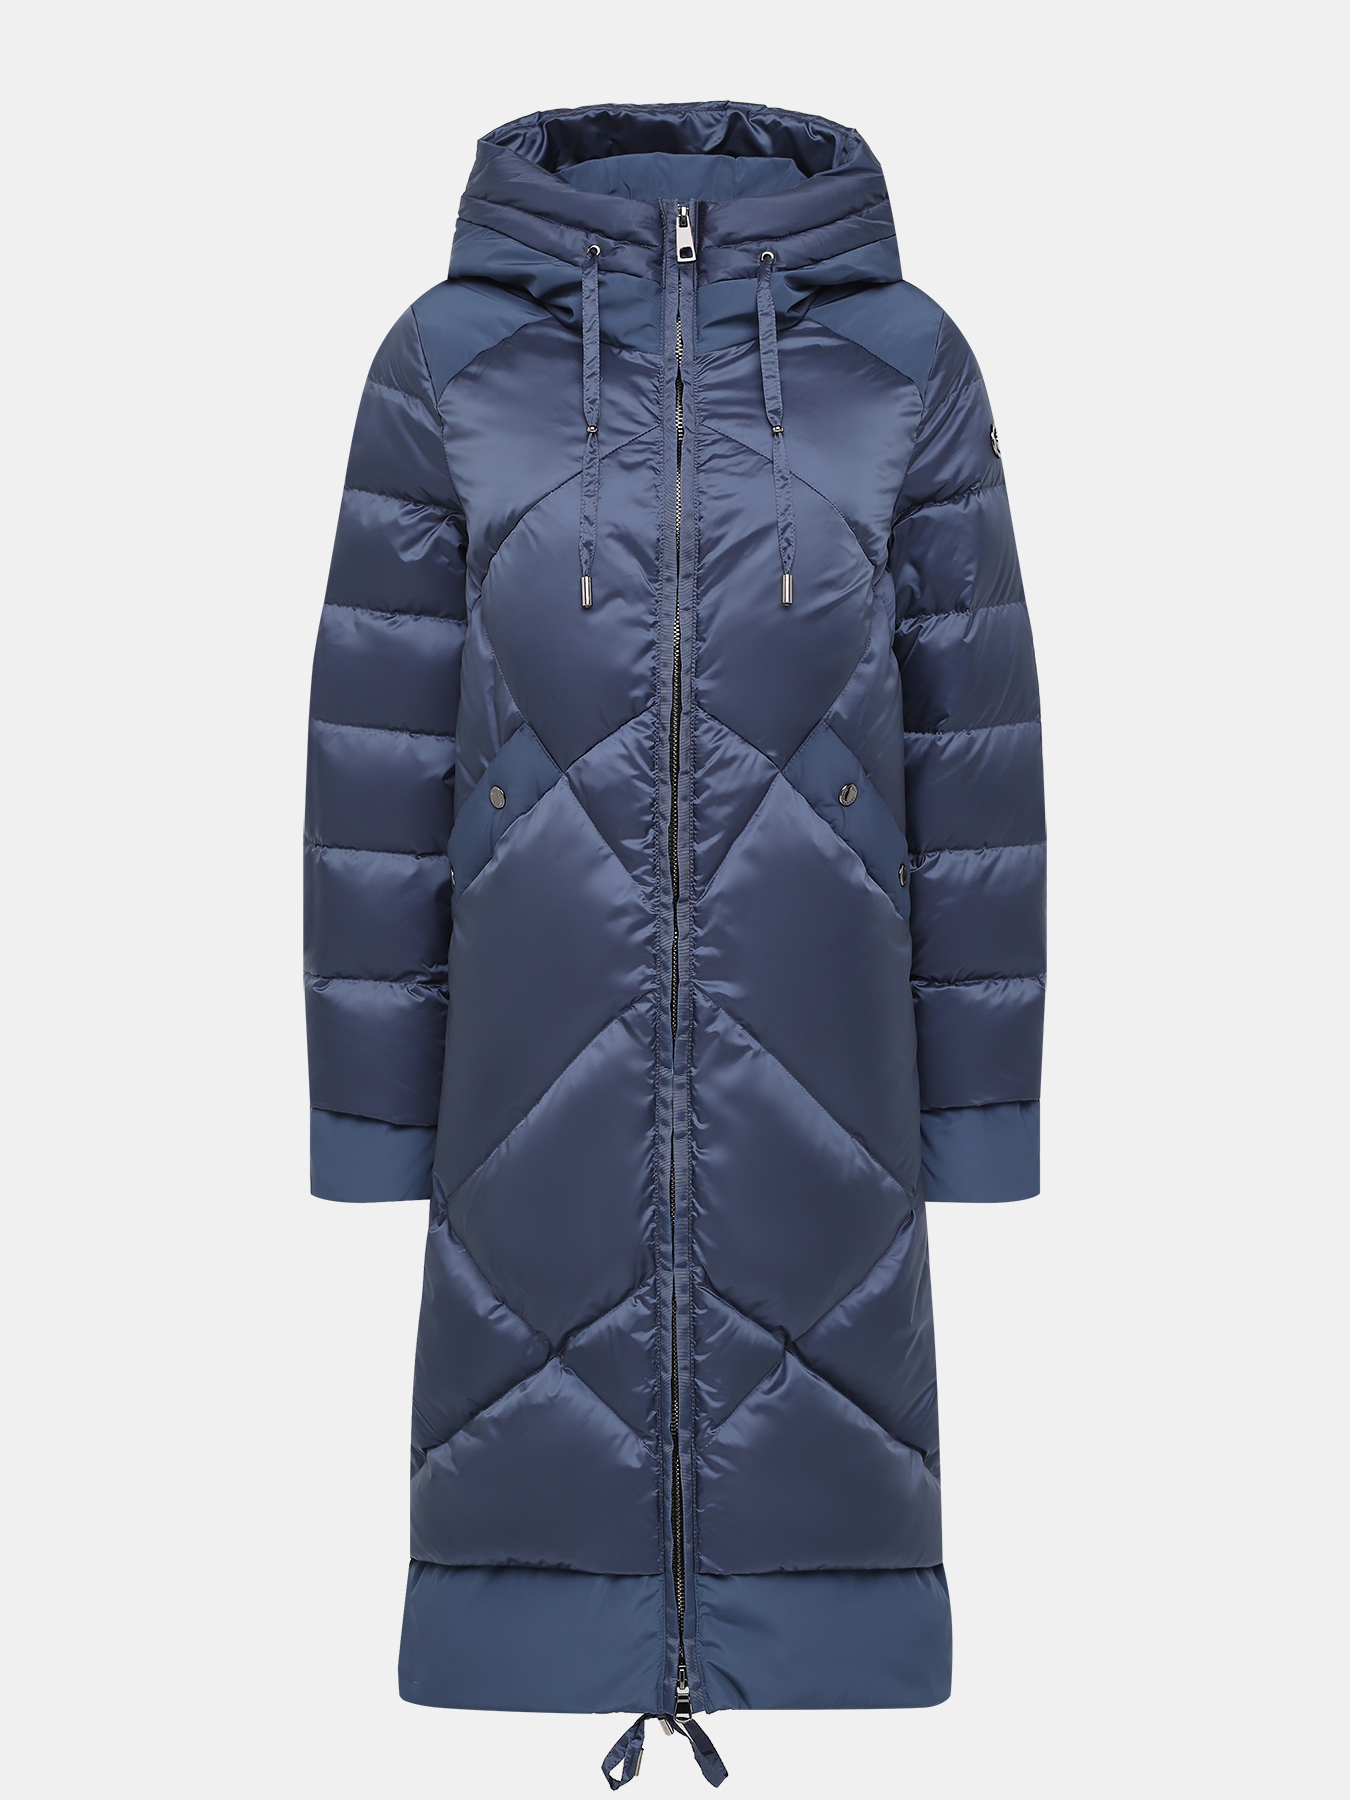 Пальто зимнее AVI 433559-021, цвет синий, размер 46